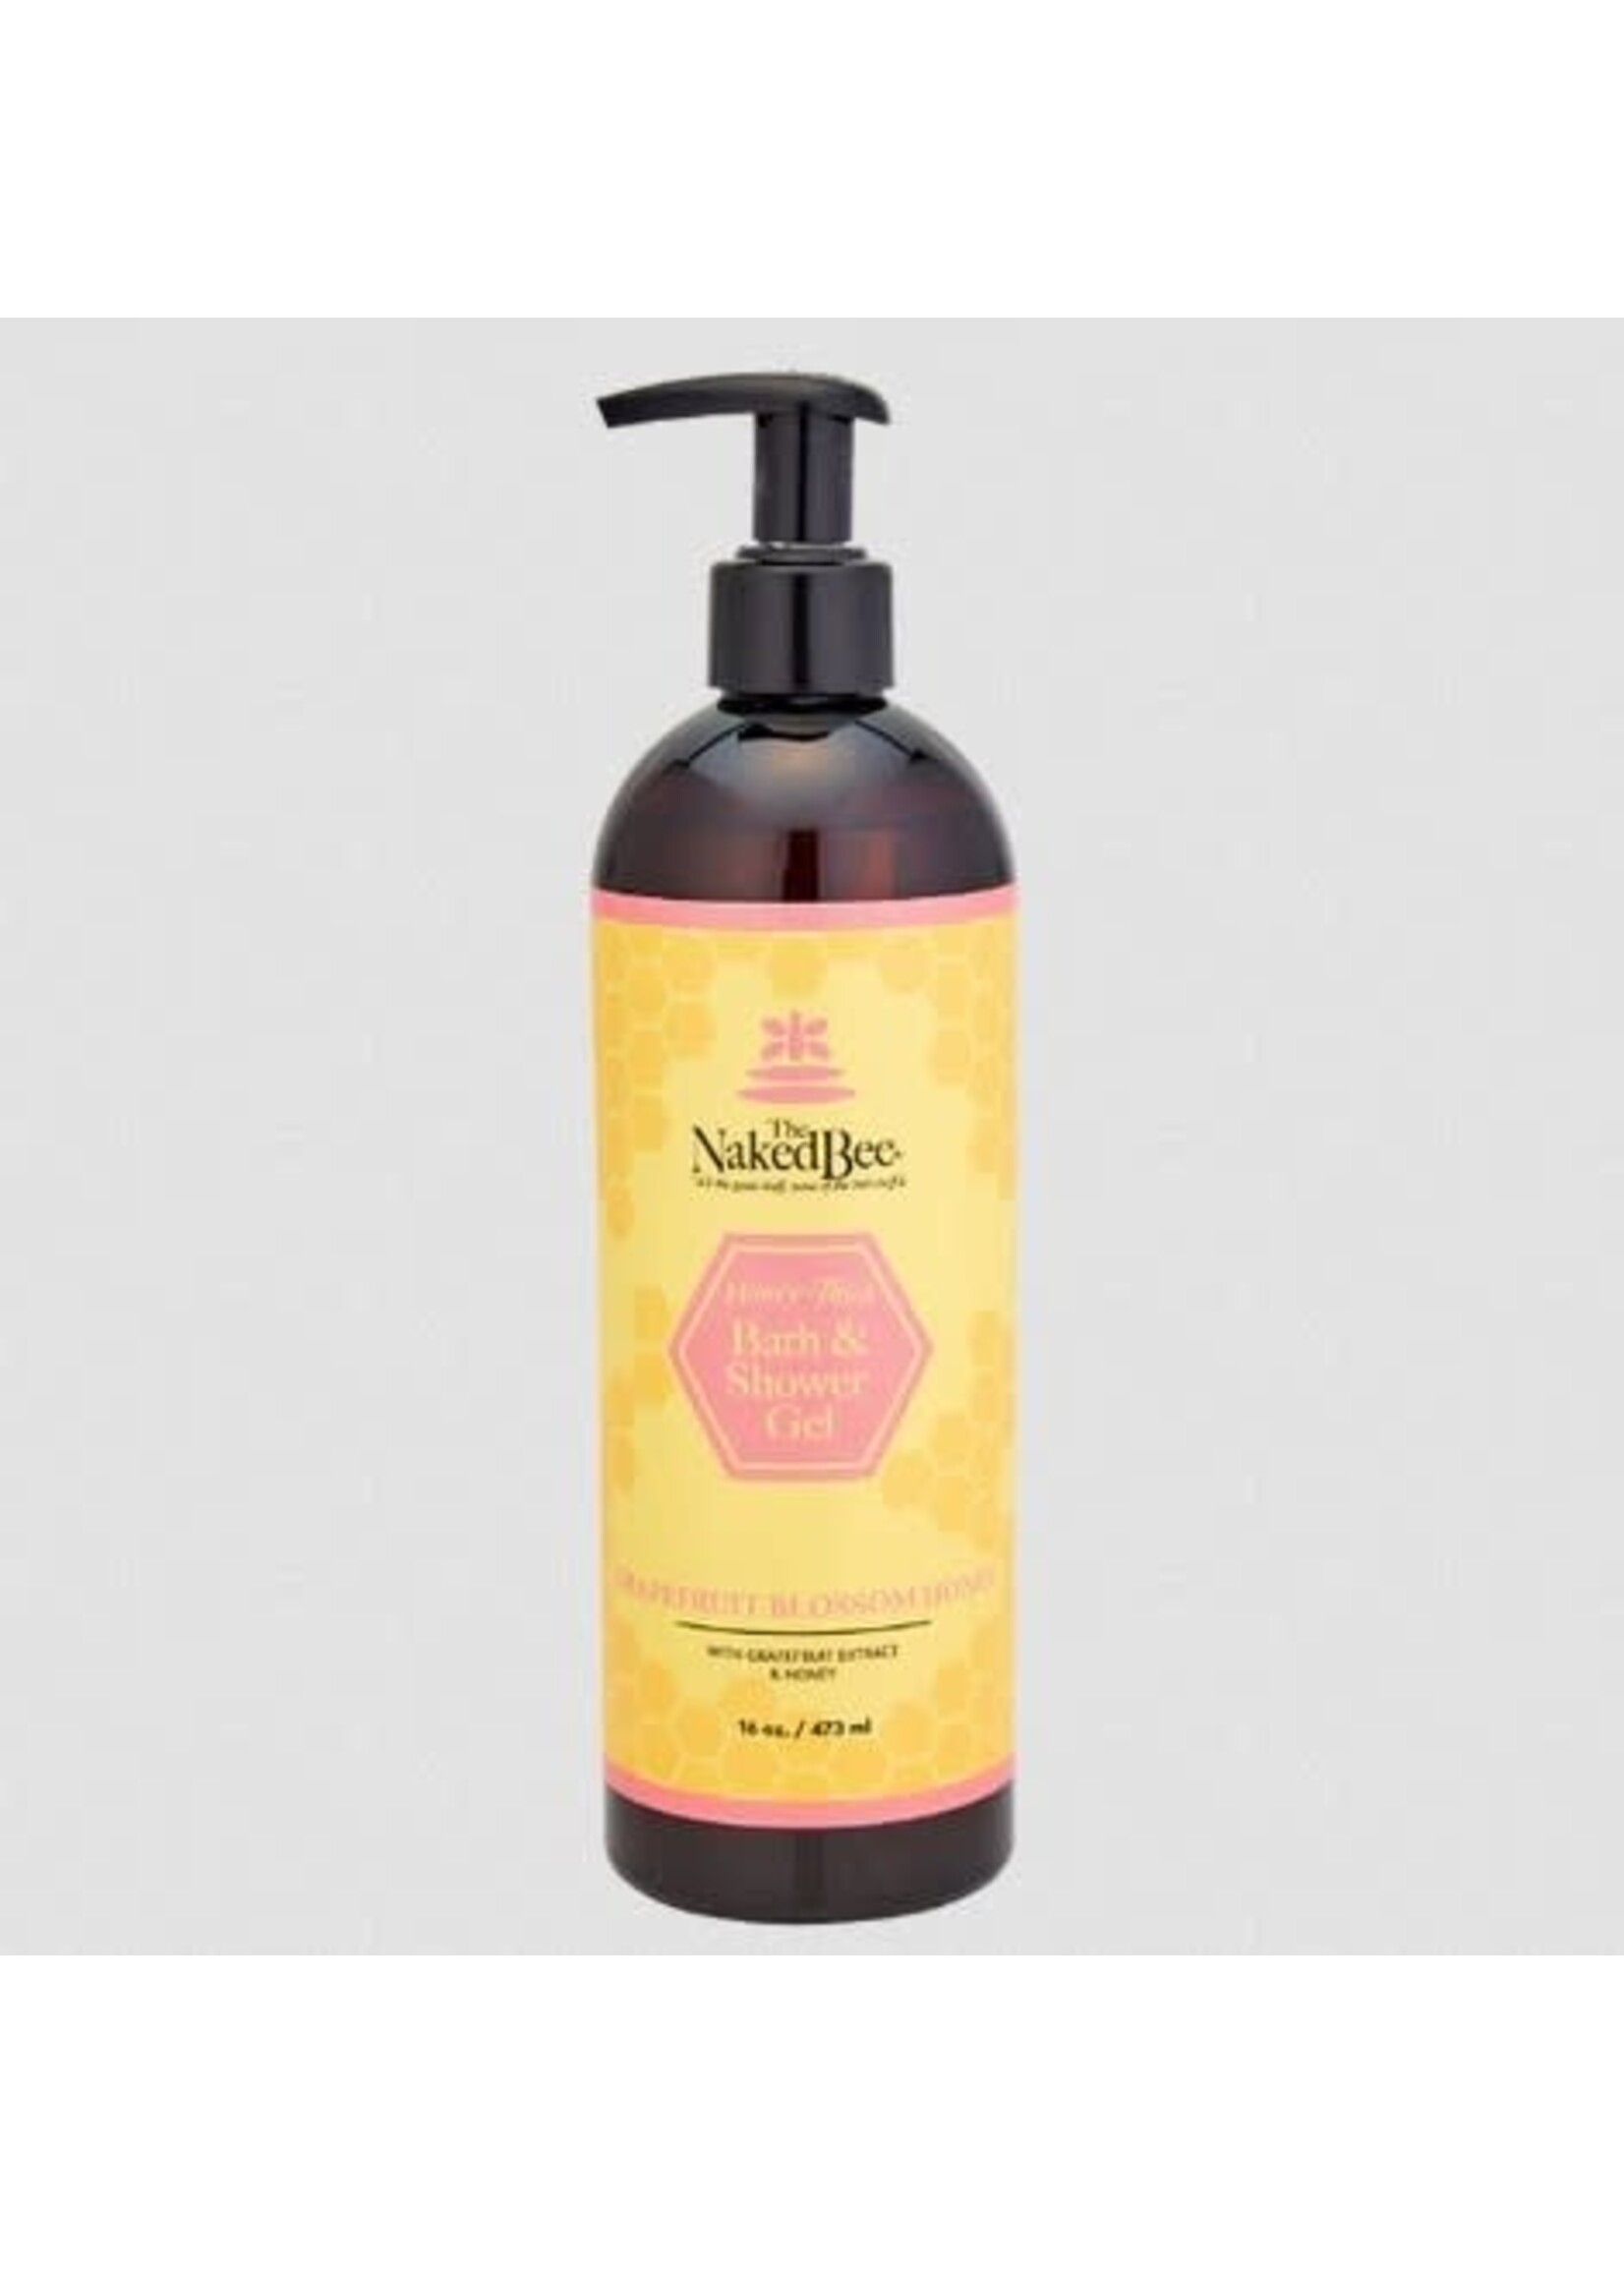 Naked Bee Grapefruit Blossom Honey Bath /Shower Gel